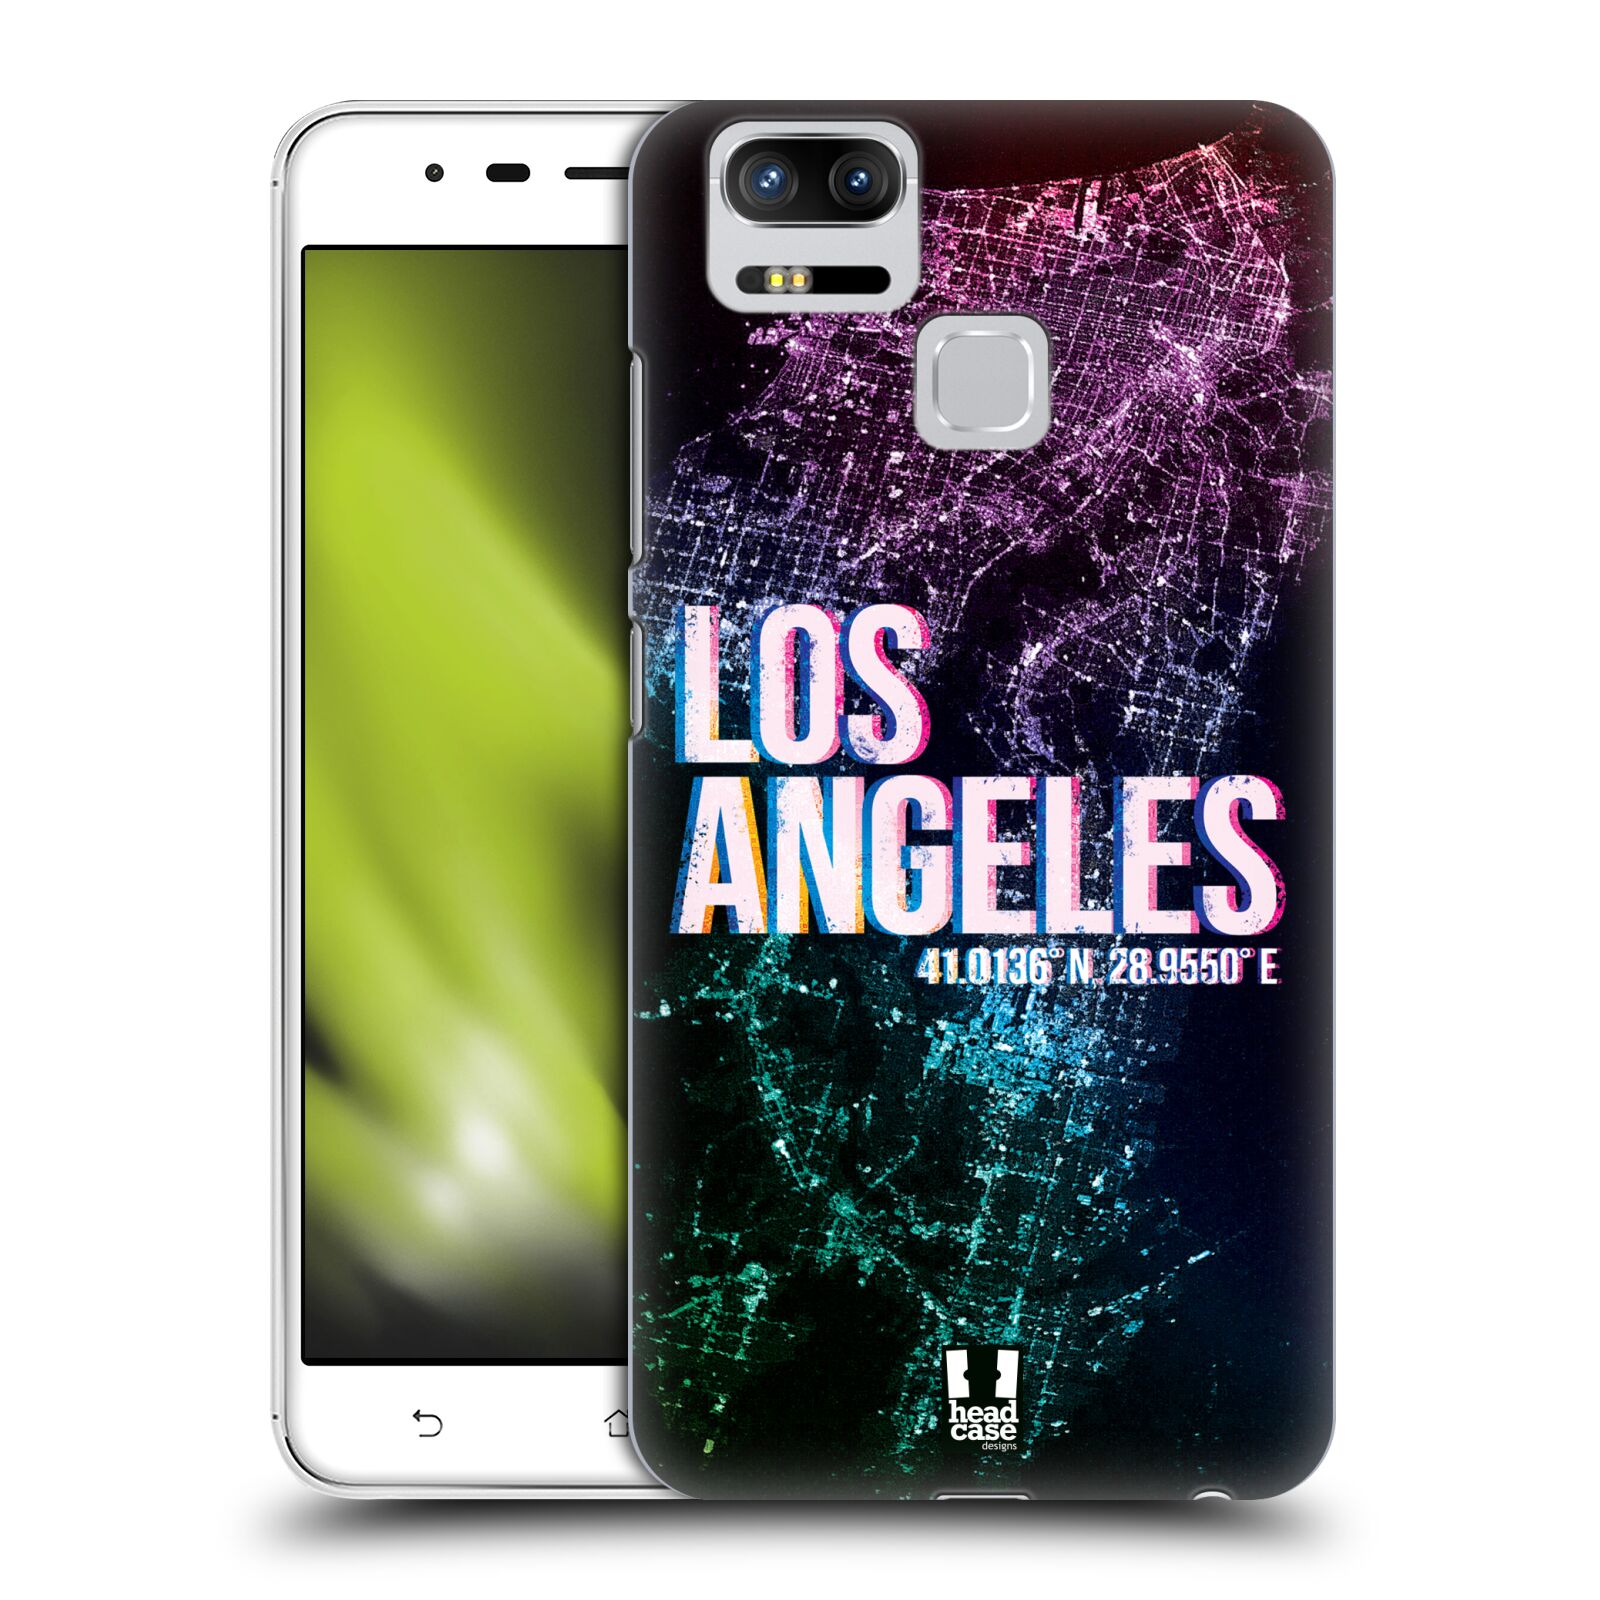 HEAD CASE plastový obal na mobil Asus Zenfone 3 Zoom ZE553KL vzor Světla známých měst, Satelitní snímky fialová USA, LOS ANGELES